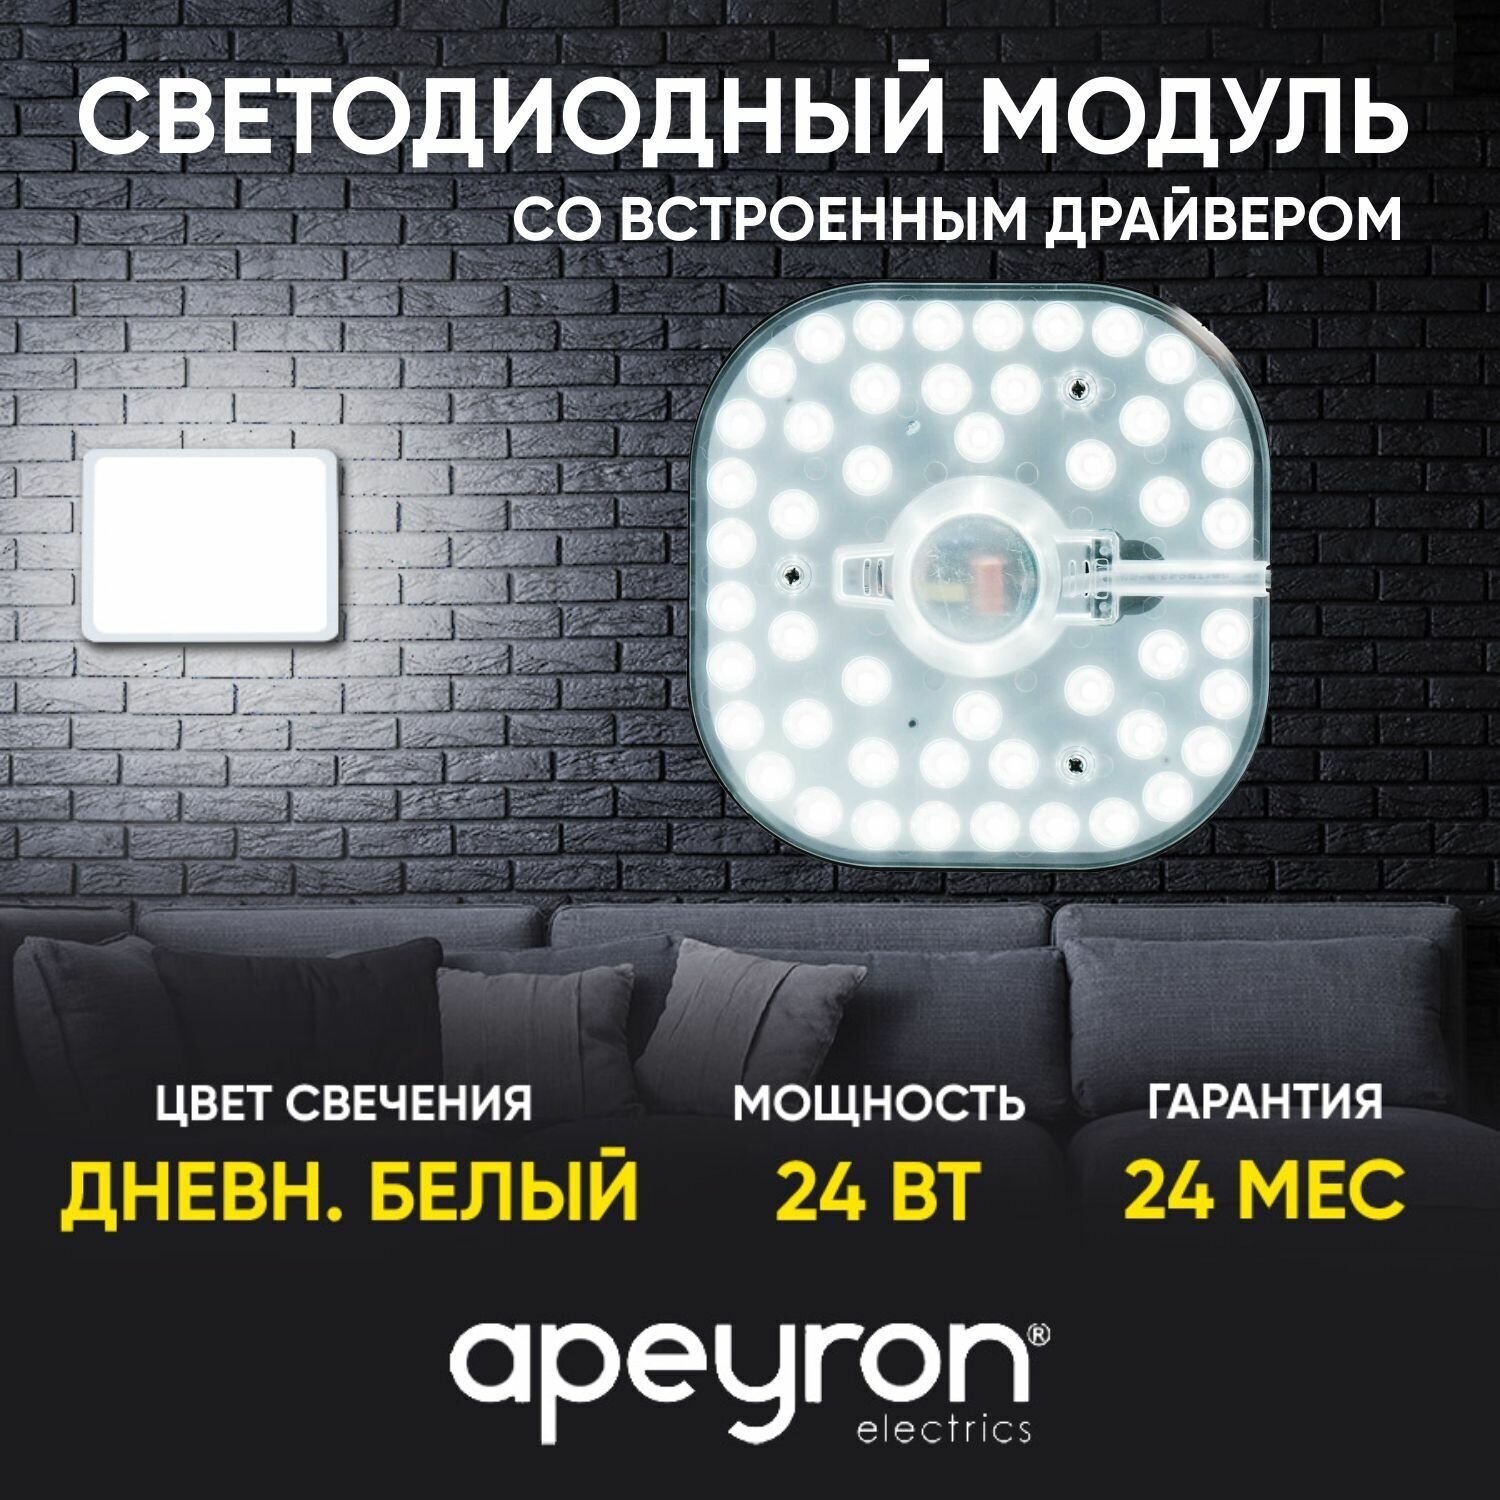 Cветодиодный модуль со встроенным драйвером APEYRON 02-26 24Вт 2100 Лм 4000 K